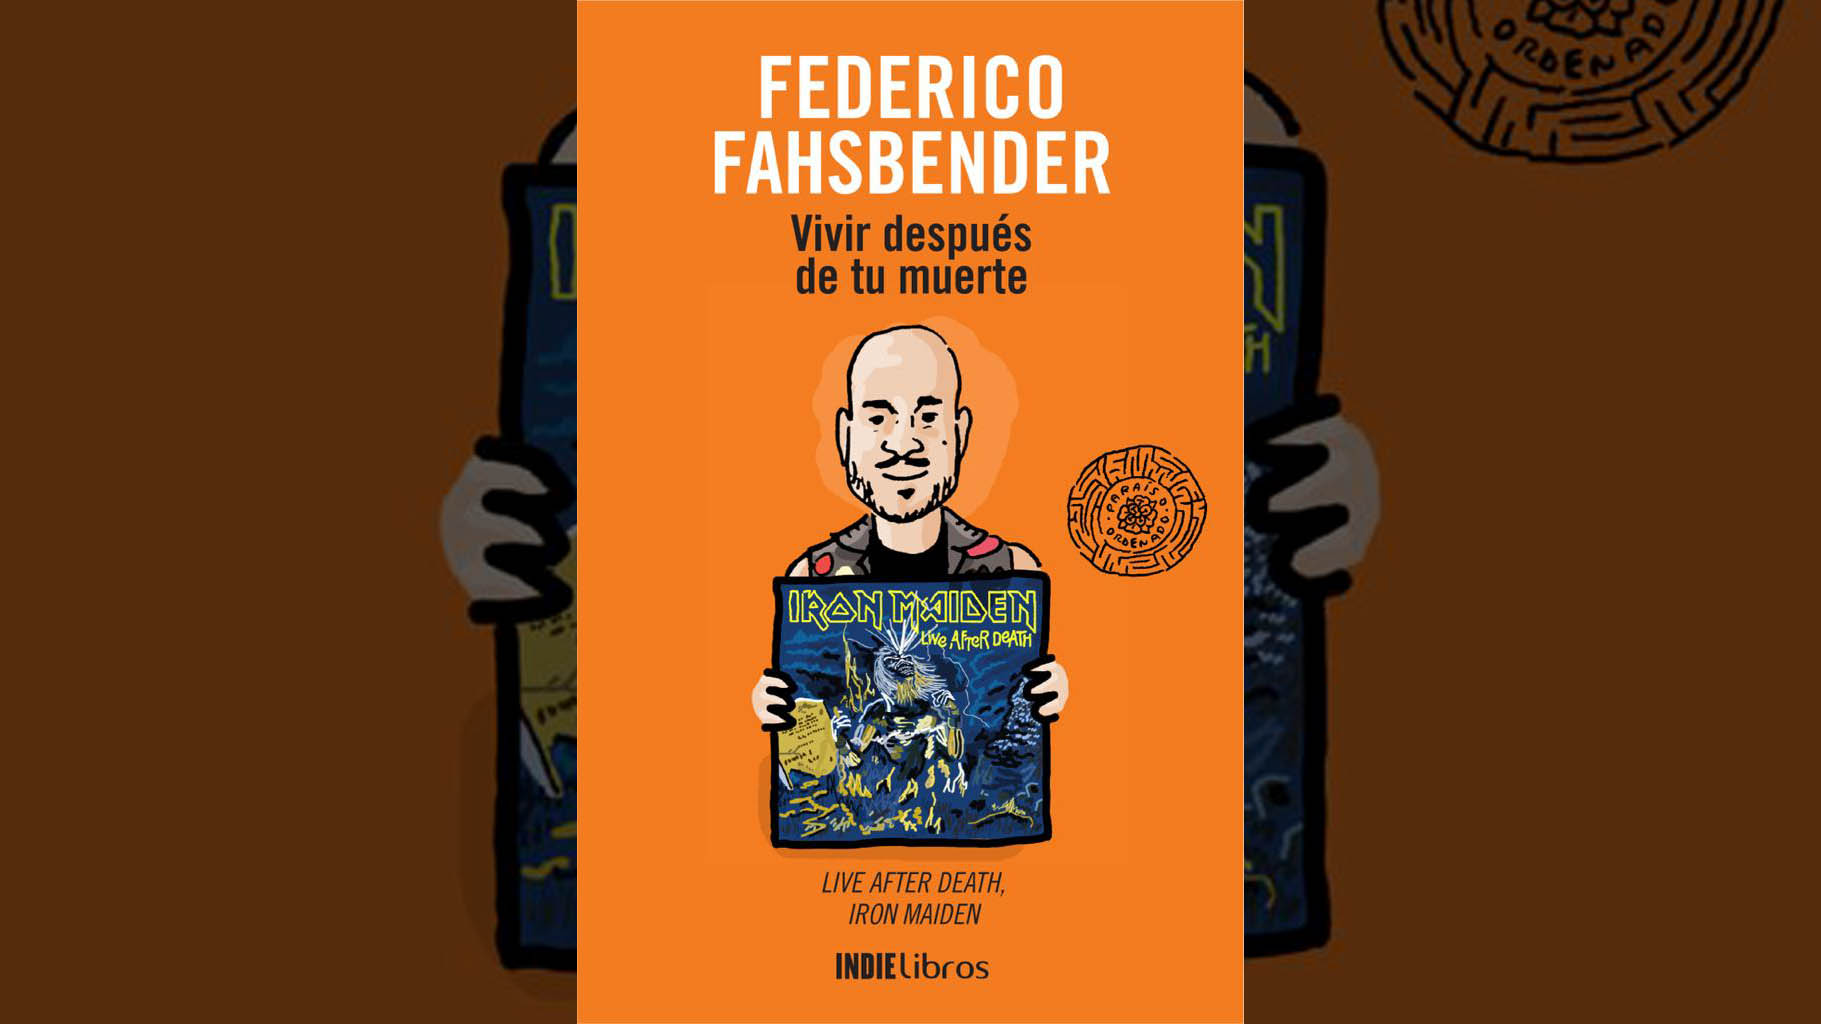 Federico Fahsbender: “El heavy metal es una herramienta para pelear”